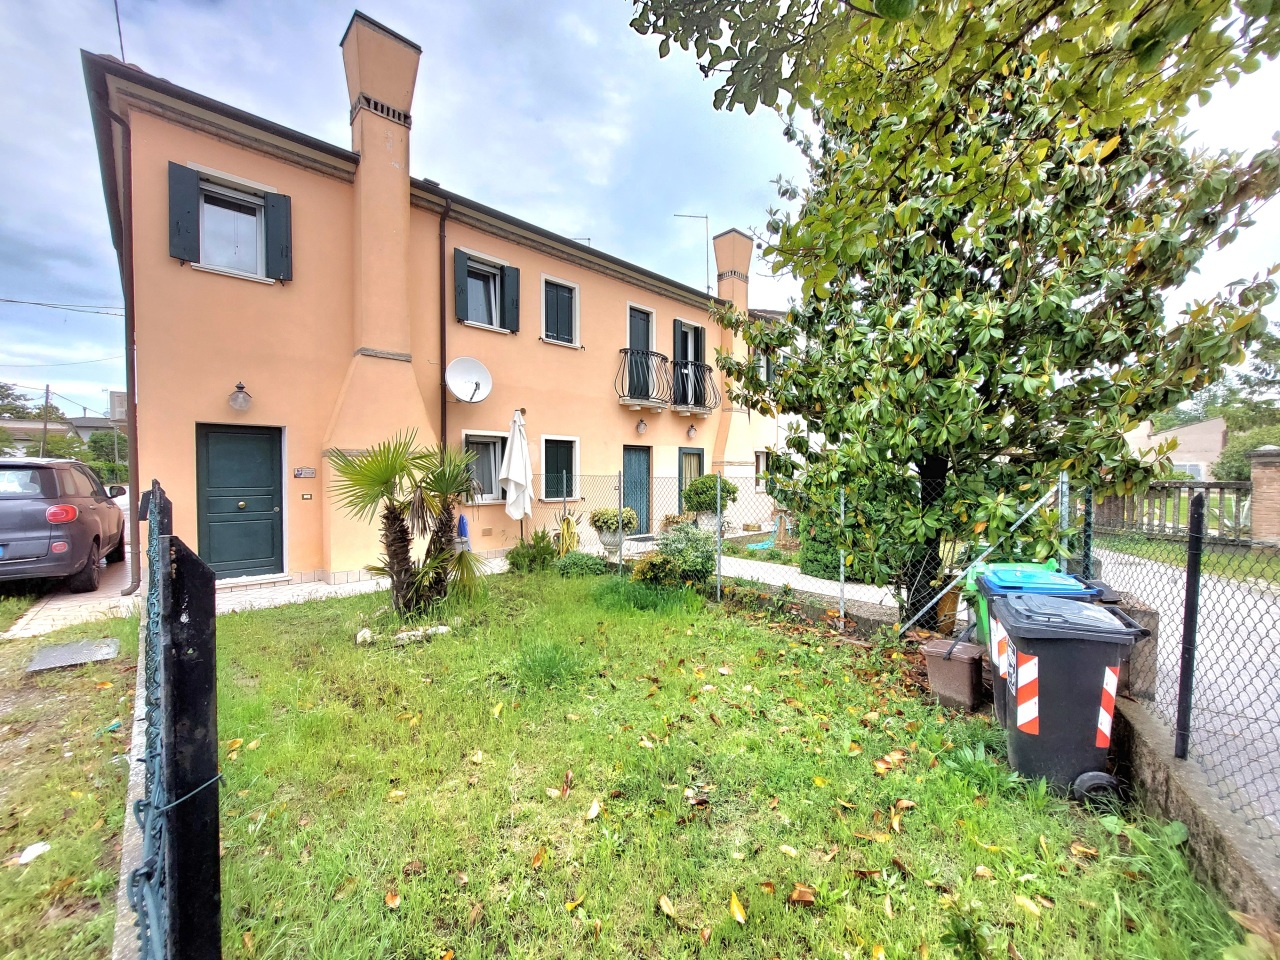 Villa a Schiera in vendita a Porto Viro, 2 locali, prezzo € 79.000 | PortaleAgenzieImmobiliari.it